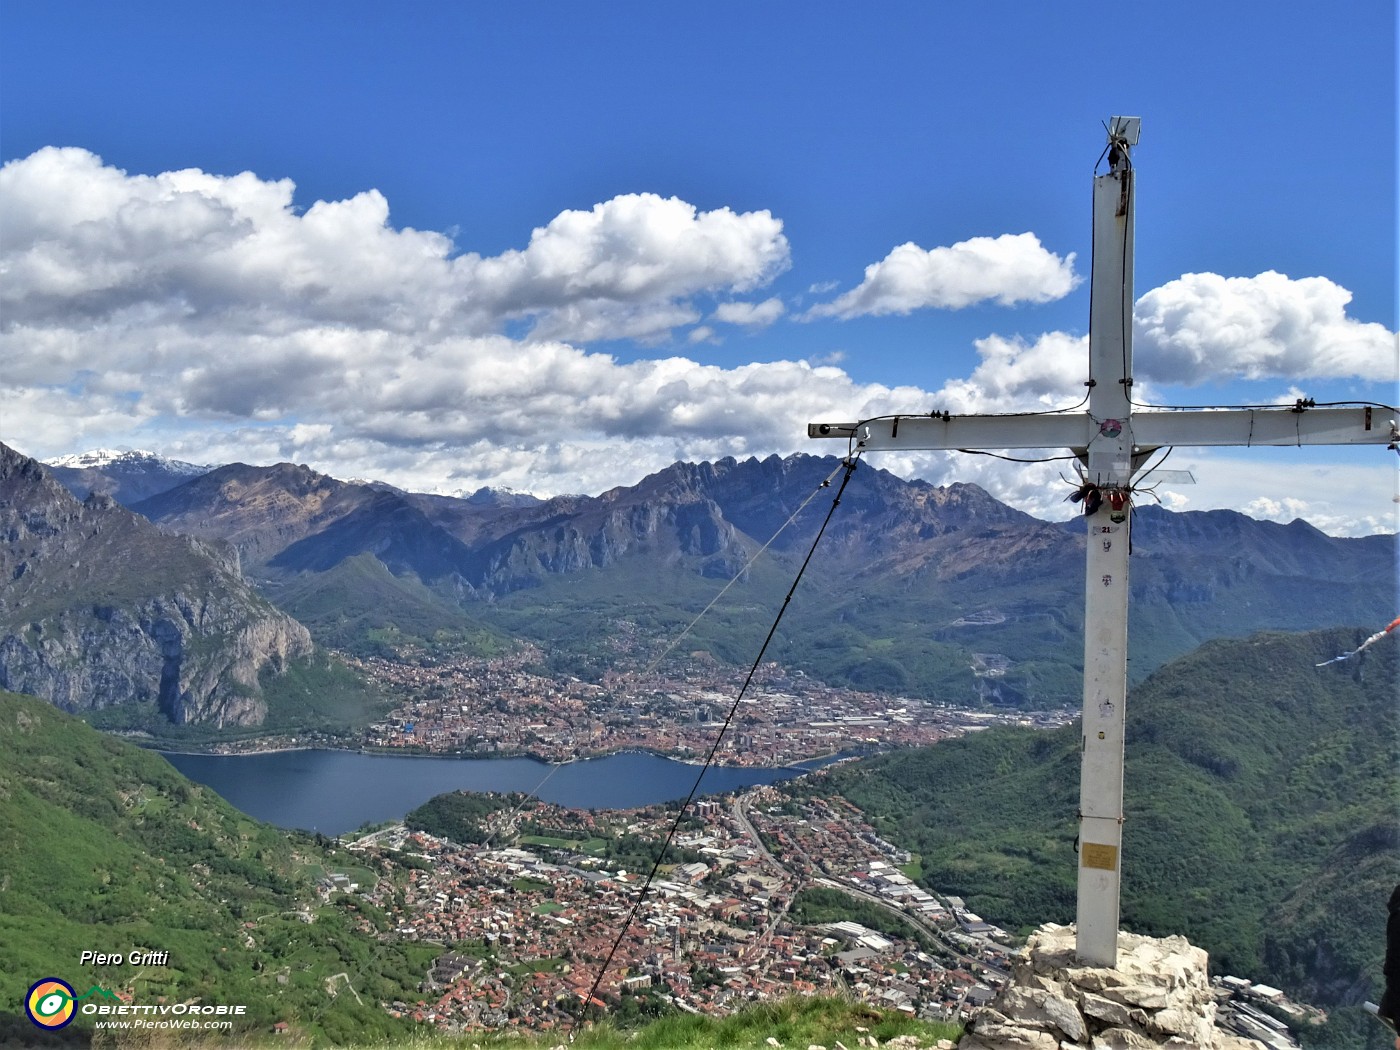 64 Alla croce di vetta del Corno Birone (1116 m) con splendida vista panoramica su Lecco, i suoi laghi, i suoi monti.JPG